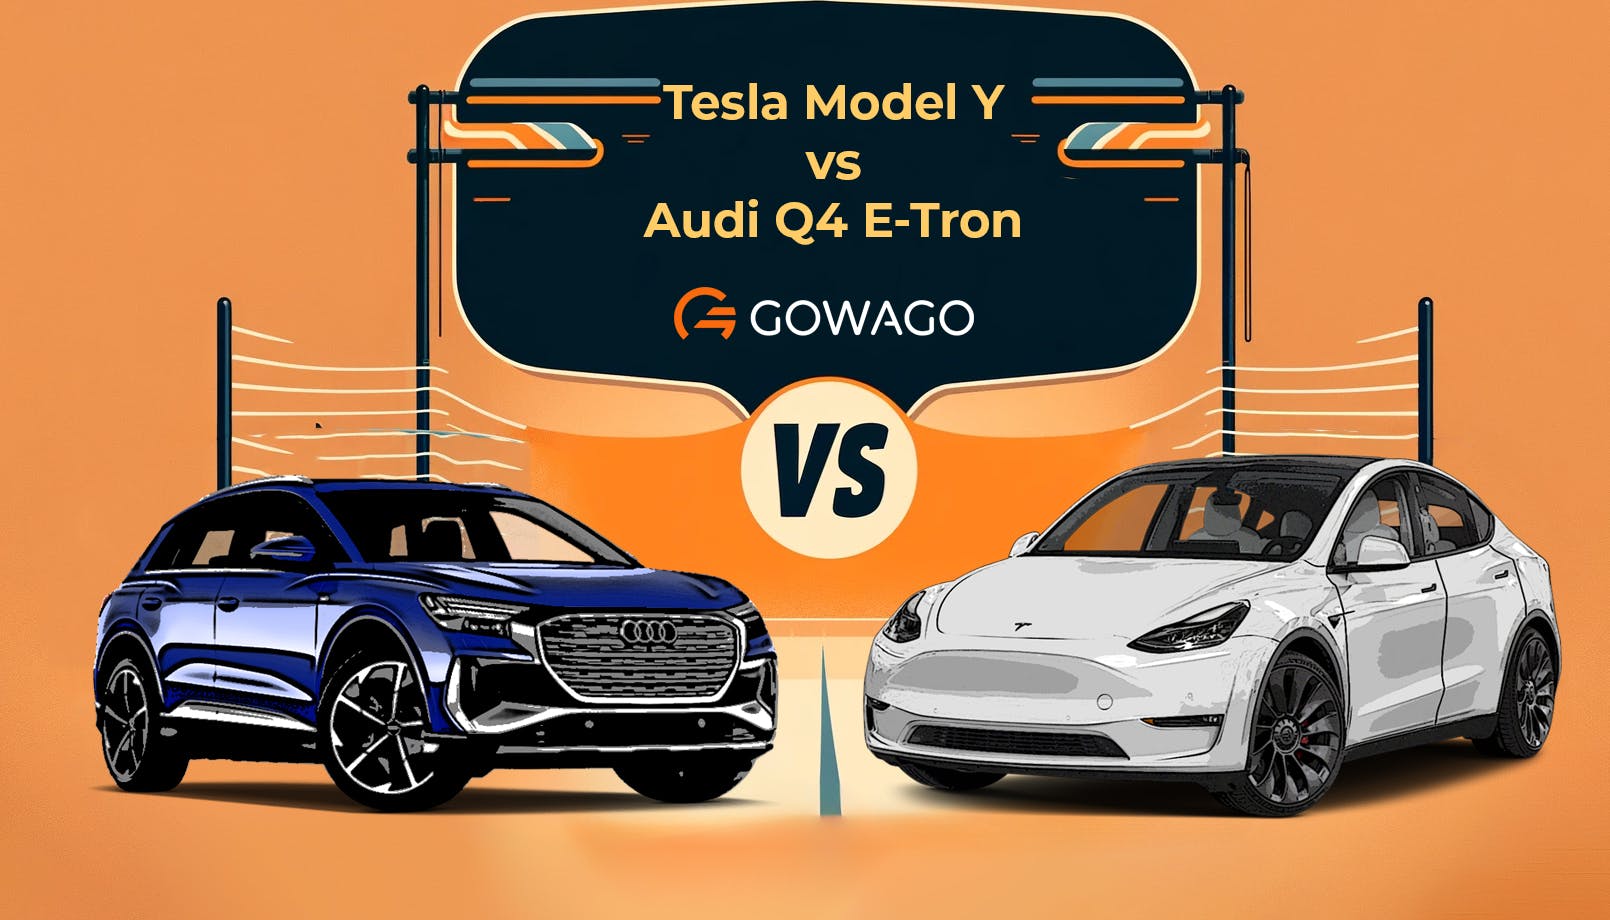 blog item card - Vergleiche das Leasing des Tesla Model Y und des Audi Q4 E-Tron – Erfahre alles über Reichweite, Leistung, Ausstattung und das Leben mit diesen elektrischen SUVs.